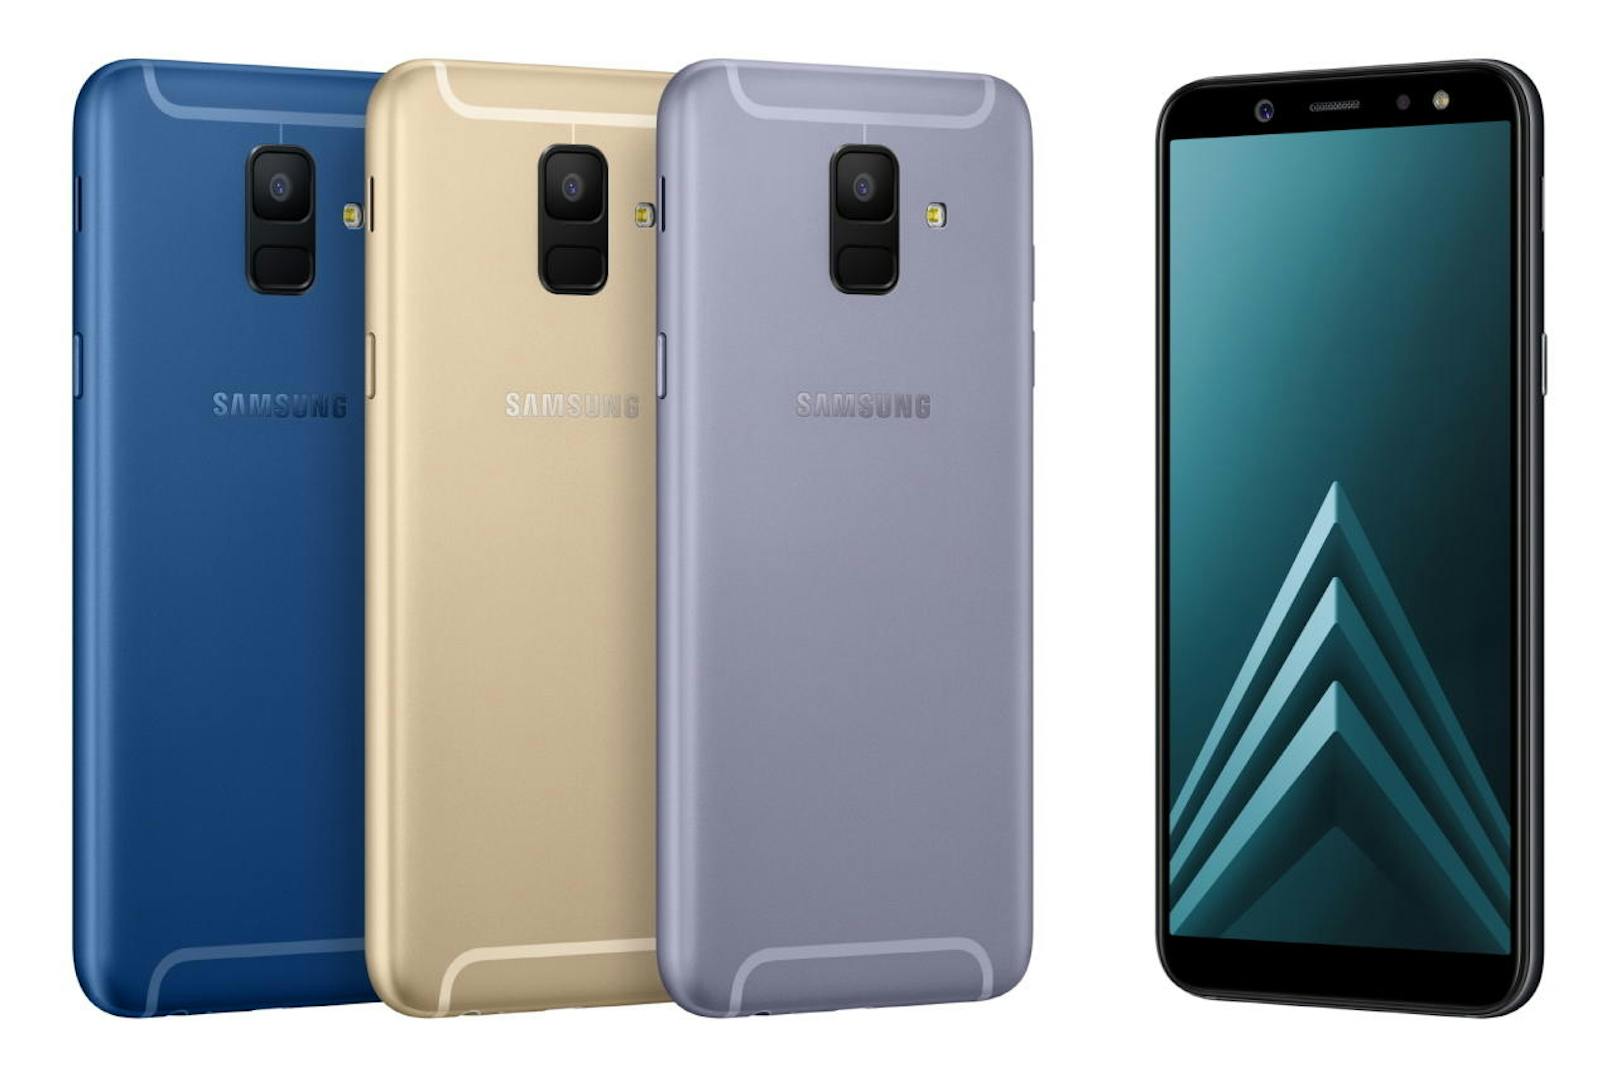 Auch Samsung hat neue Smartphones im Gepäck, nämlich das Samsung Galaxy A6 (5,6 Zoll) und A6+ (6 Zoll). Die Frontkameras mit LED-Blitz - beim Galaxy A6 mit 16 Megapixeln, beim Galaxy A6+ sogar mit 24 Megapixeln - soll Selfie-Fans begeistern. Als DUOS-Geräte können beide mit zwei SIM-Karten und einer microSD-Speicherkarte verwendet werden. Das Samsung Galaxy A6 hat einen Preis von 309 Euro, das Galaxy A6+ kostet 369 Euro. Beide Modelle stehen in den Farben "Black", "Gold" und "Lavender" zur Auswahl und sind ab Anfang Juni verfügbar. Der Akku ist 3.000 bzw. 3.500 mAh groß, dazu gibt es 3GB RAM, 16 bzw. 1,8 GHz Octa-Core-Prozessor, 32GB internen Speicher und 16 MP Hauptkamera, beim A6+ zusätzlich ein 5 MP Teleobjektiv.